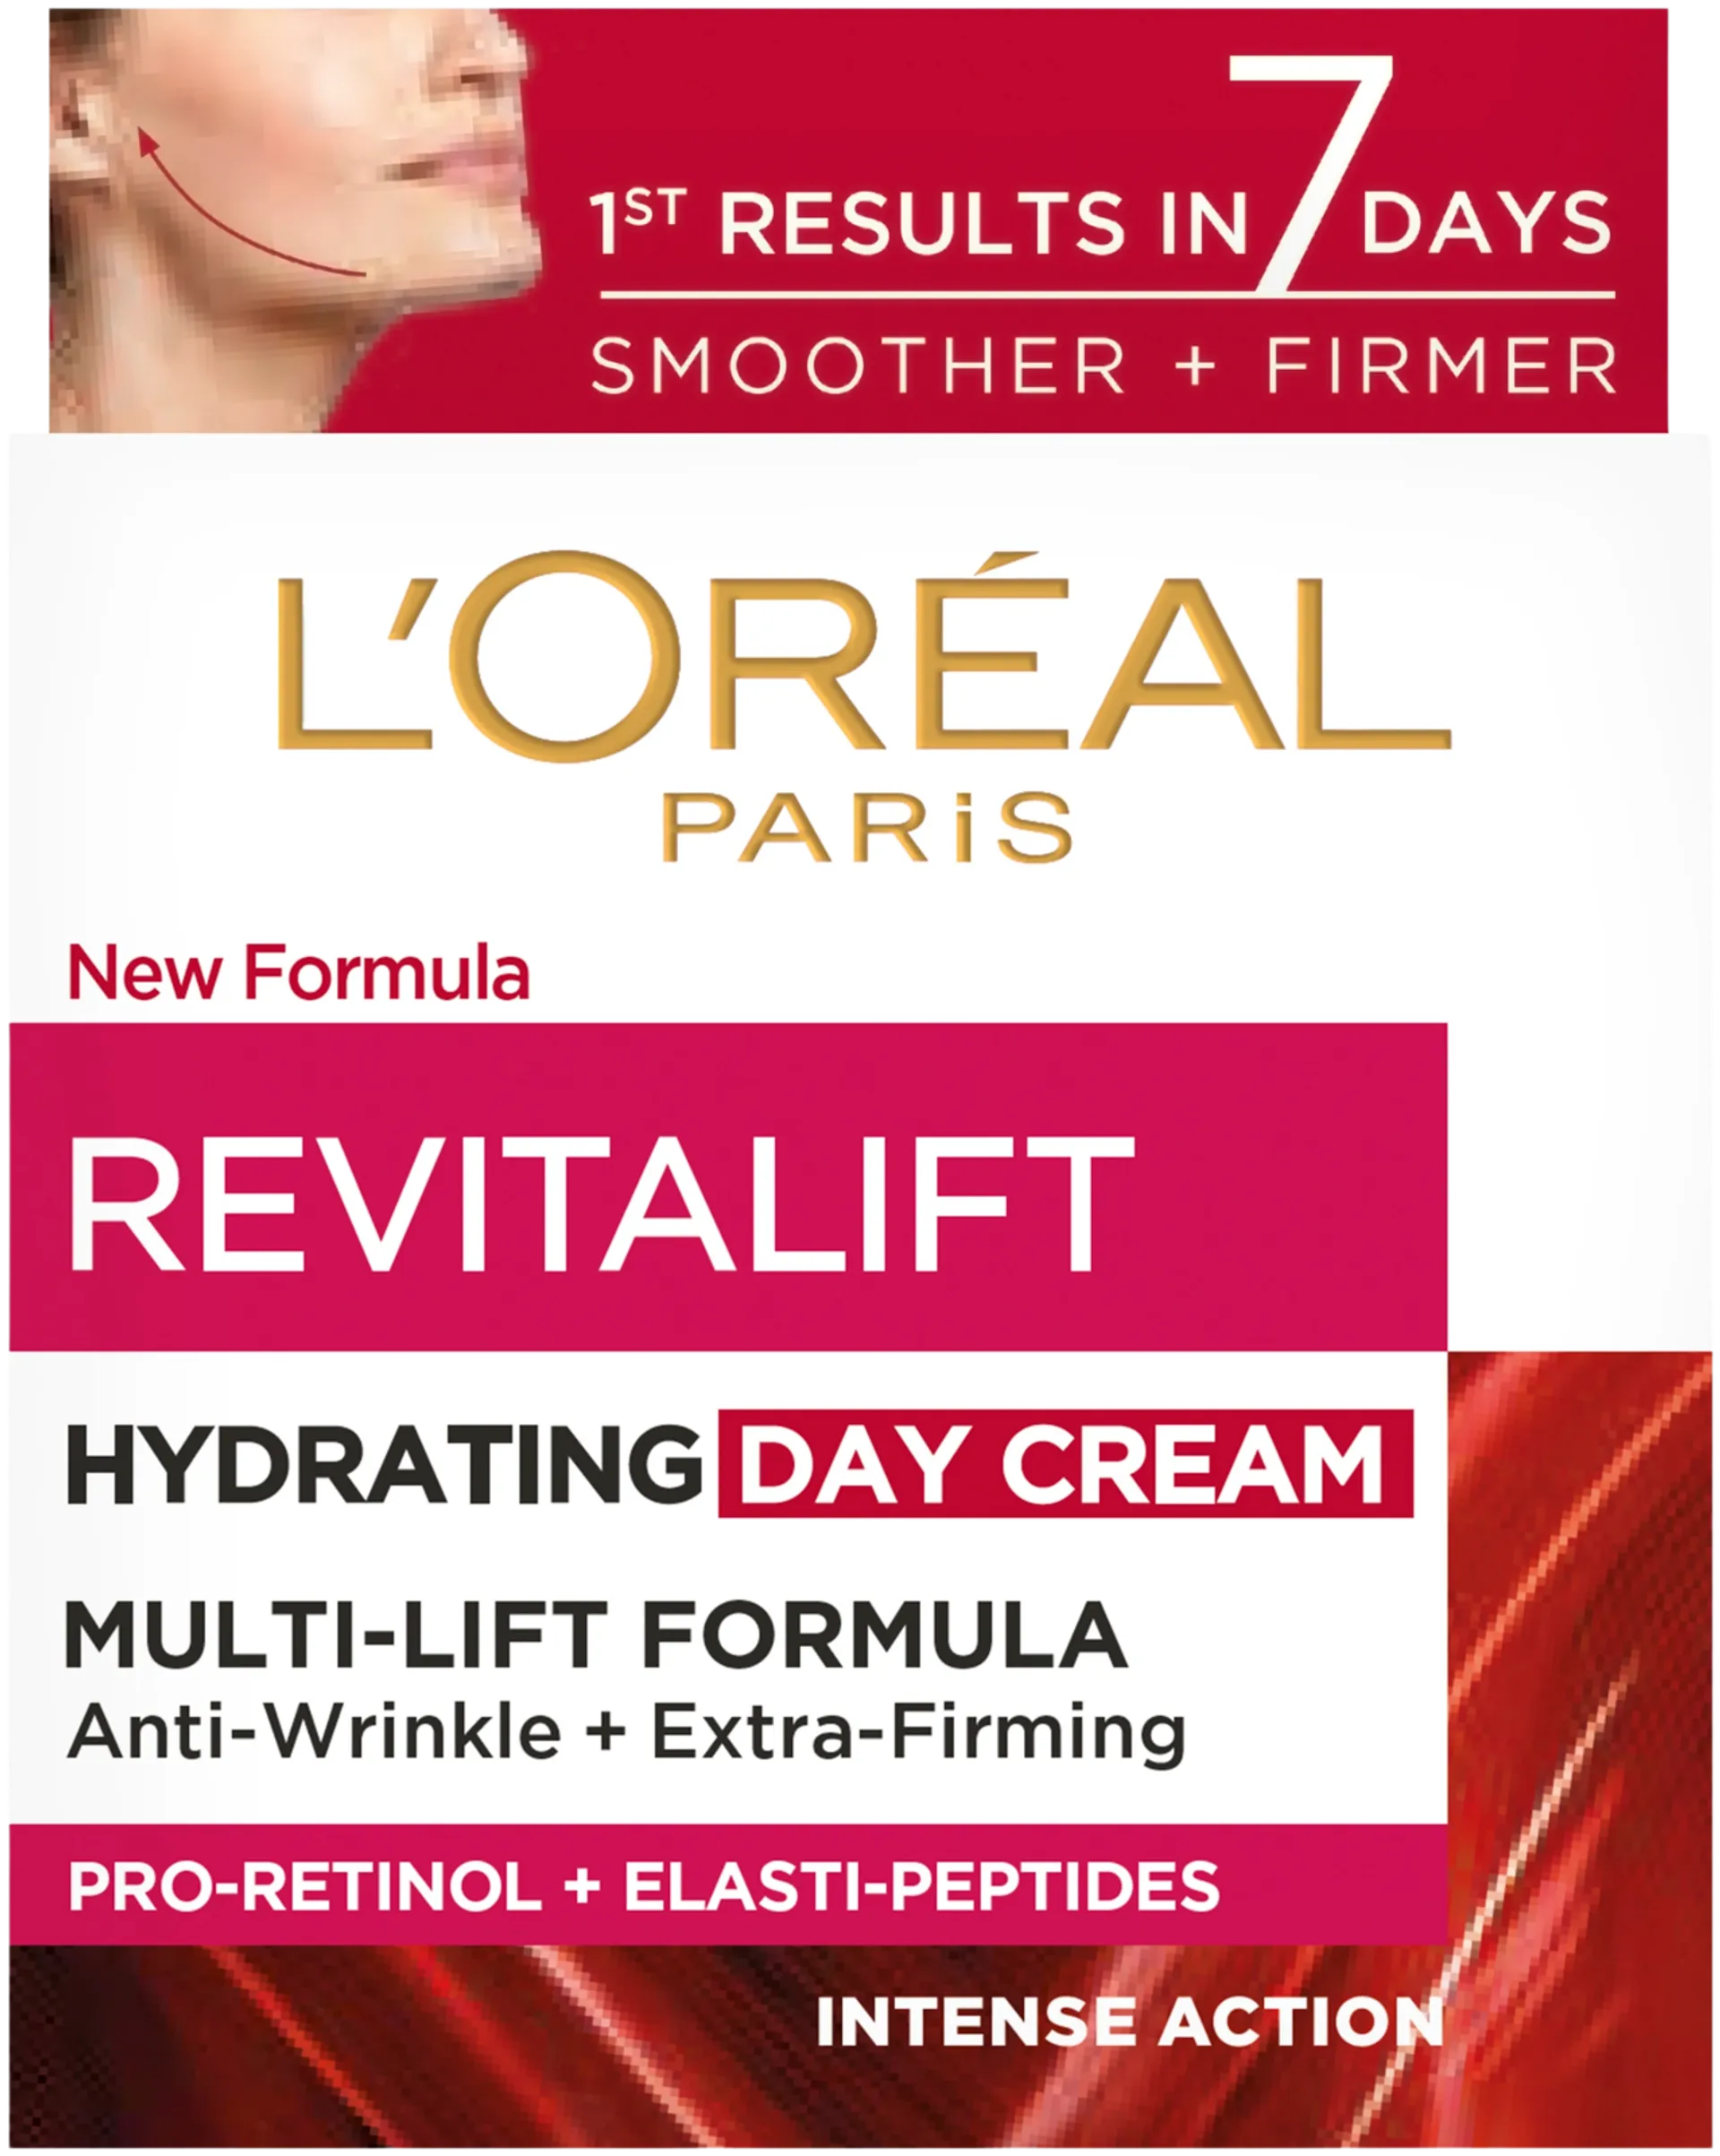 L'Oréal Paris Revitalift ryppyjä silottava ja ihoa kiinteyttävä päivävoide 50ml - 2